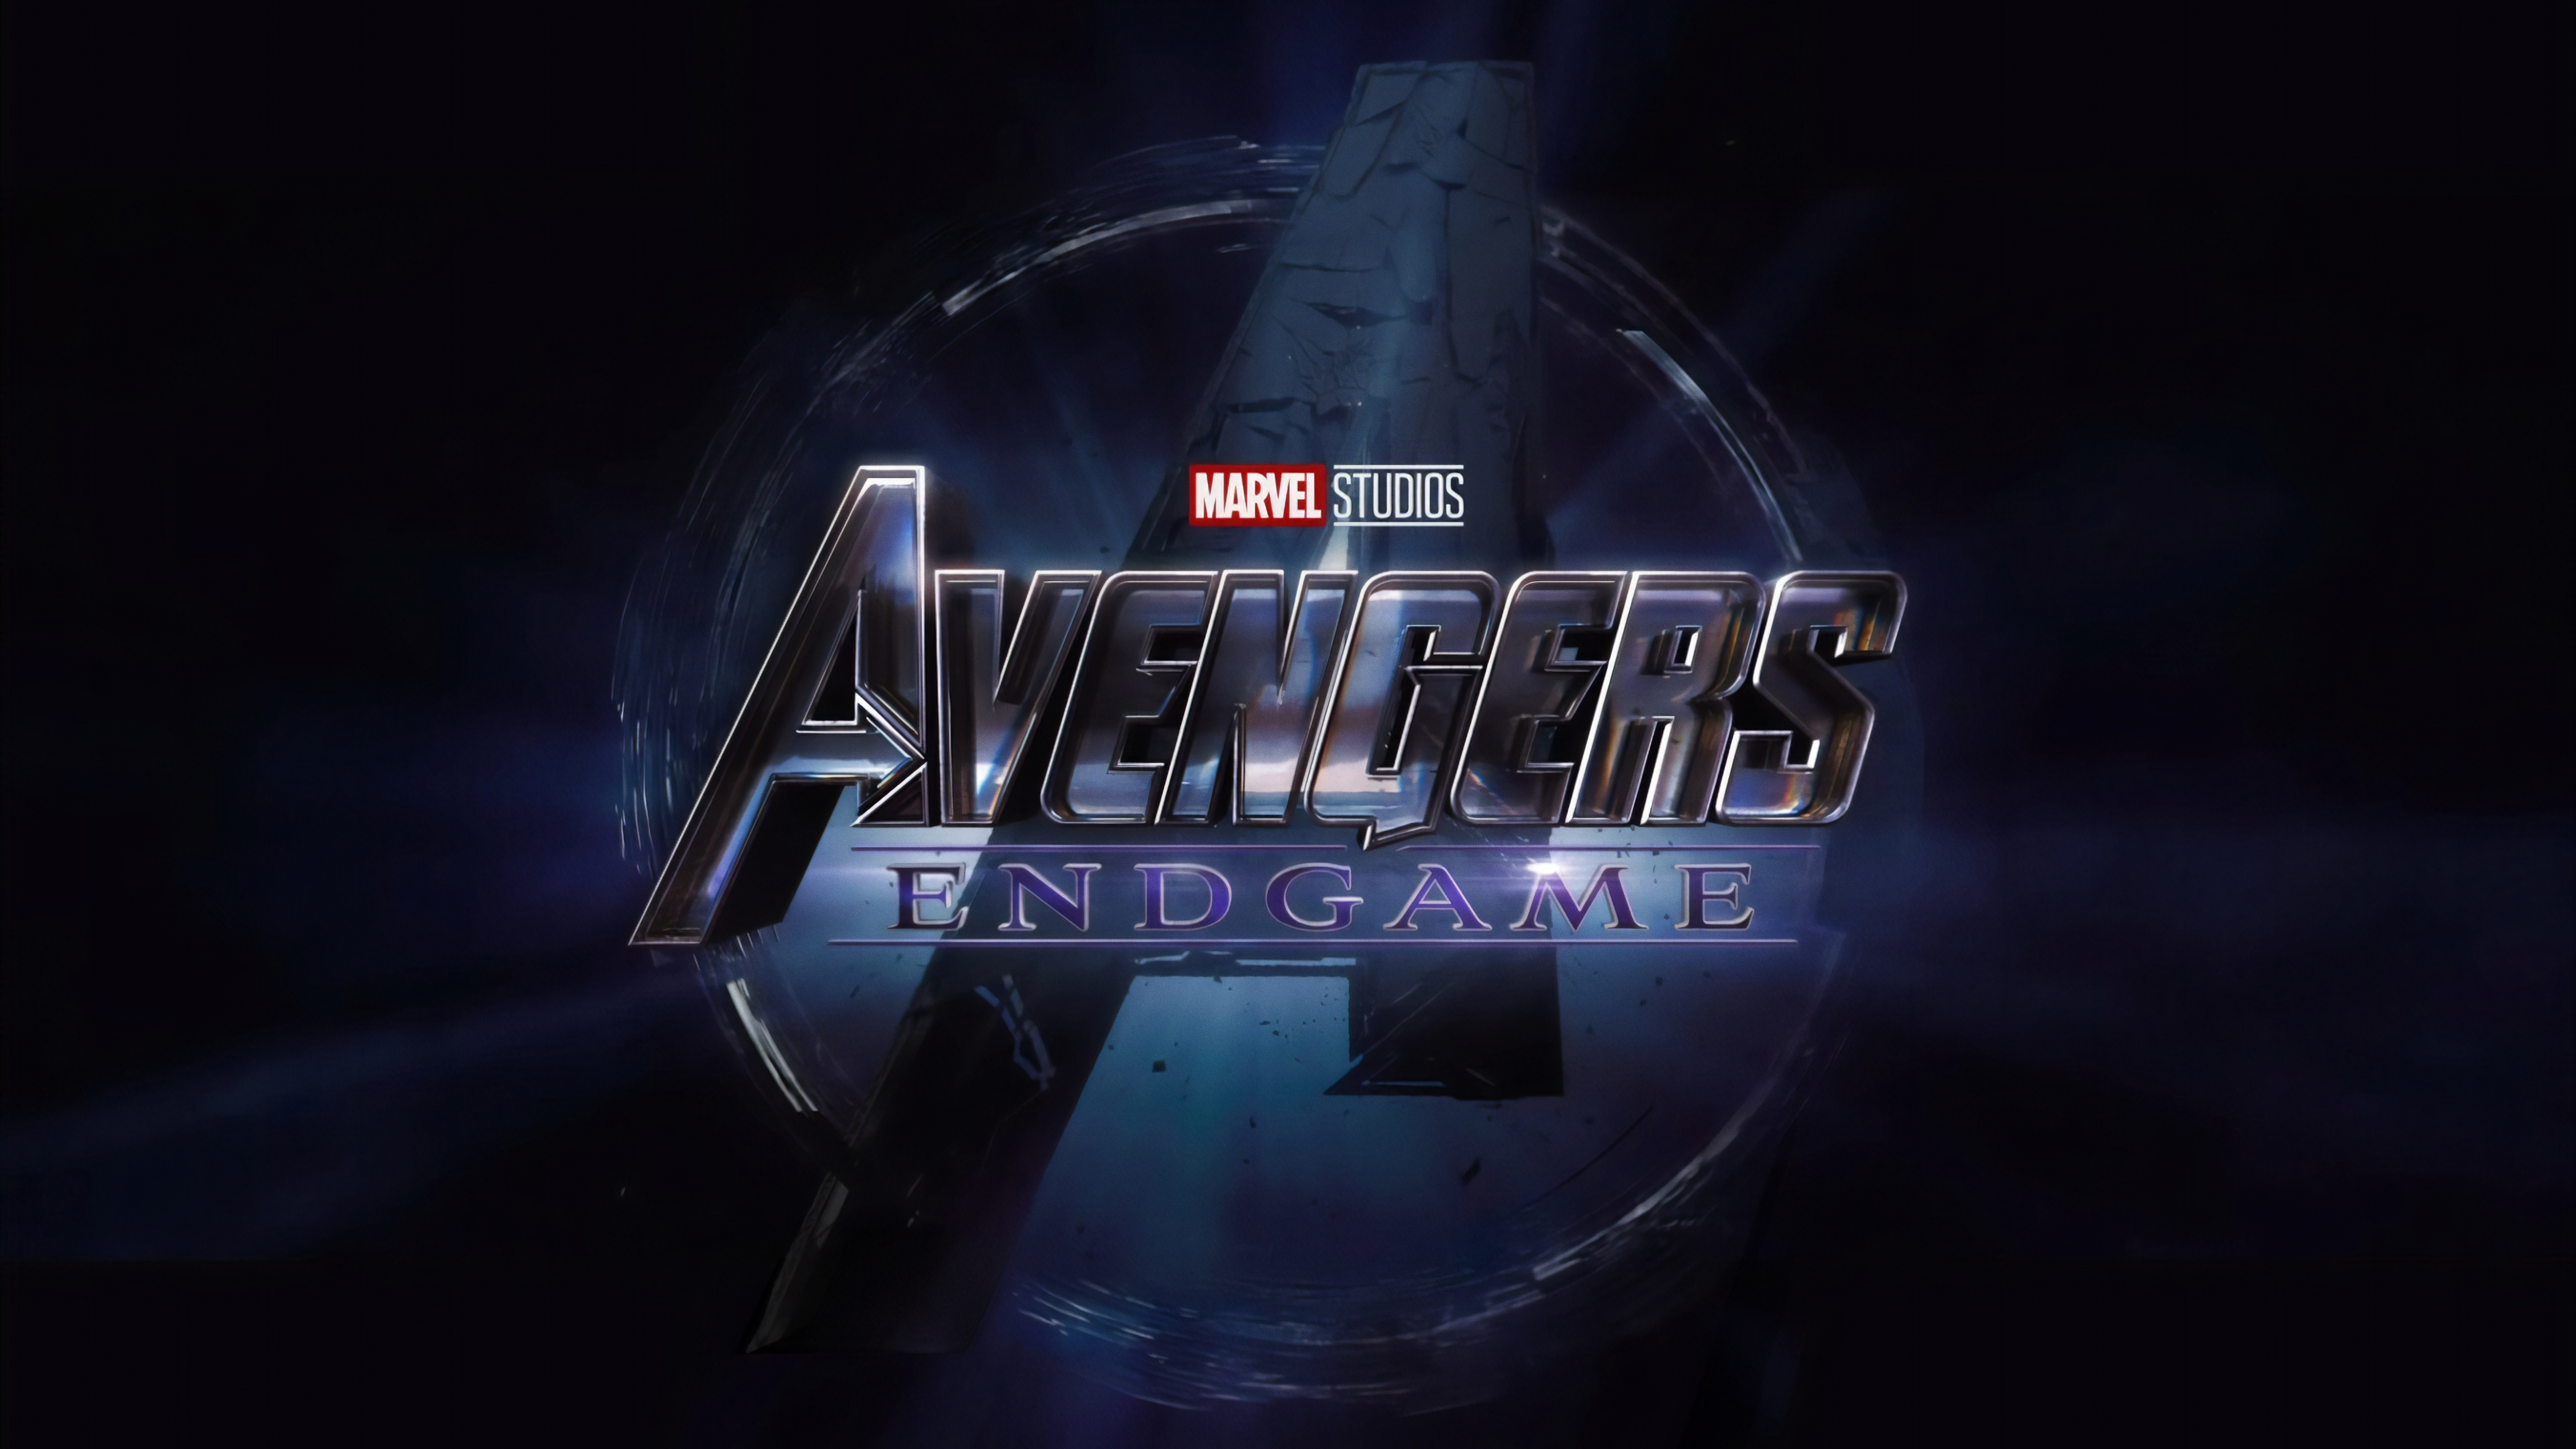 Wallpaper Avengers Endgame Marvel Studios